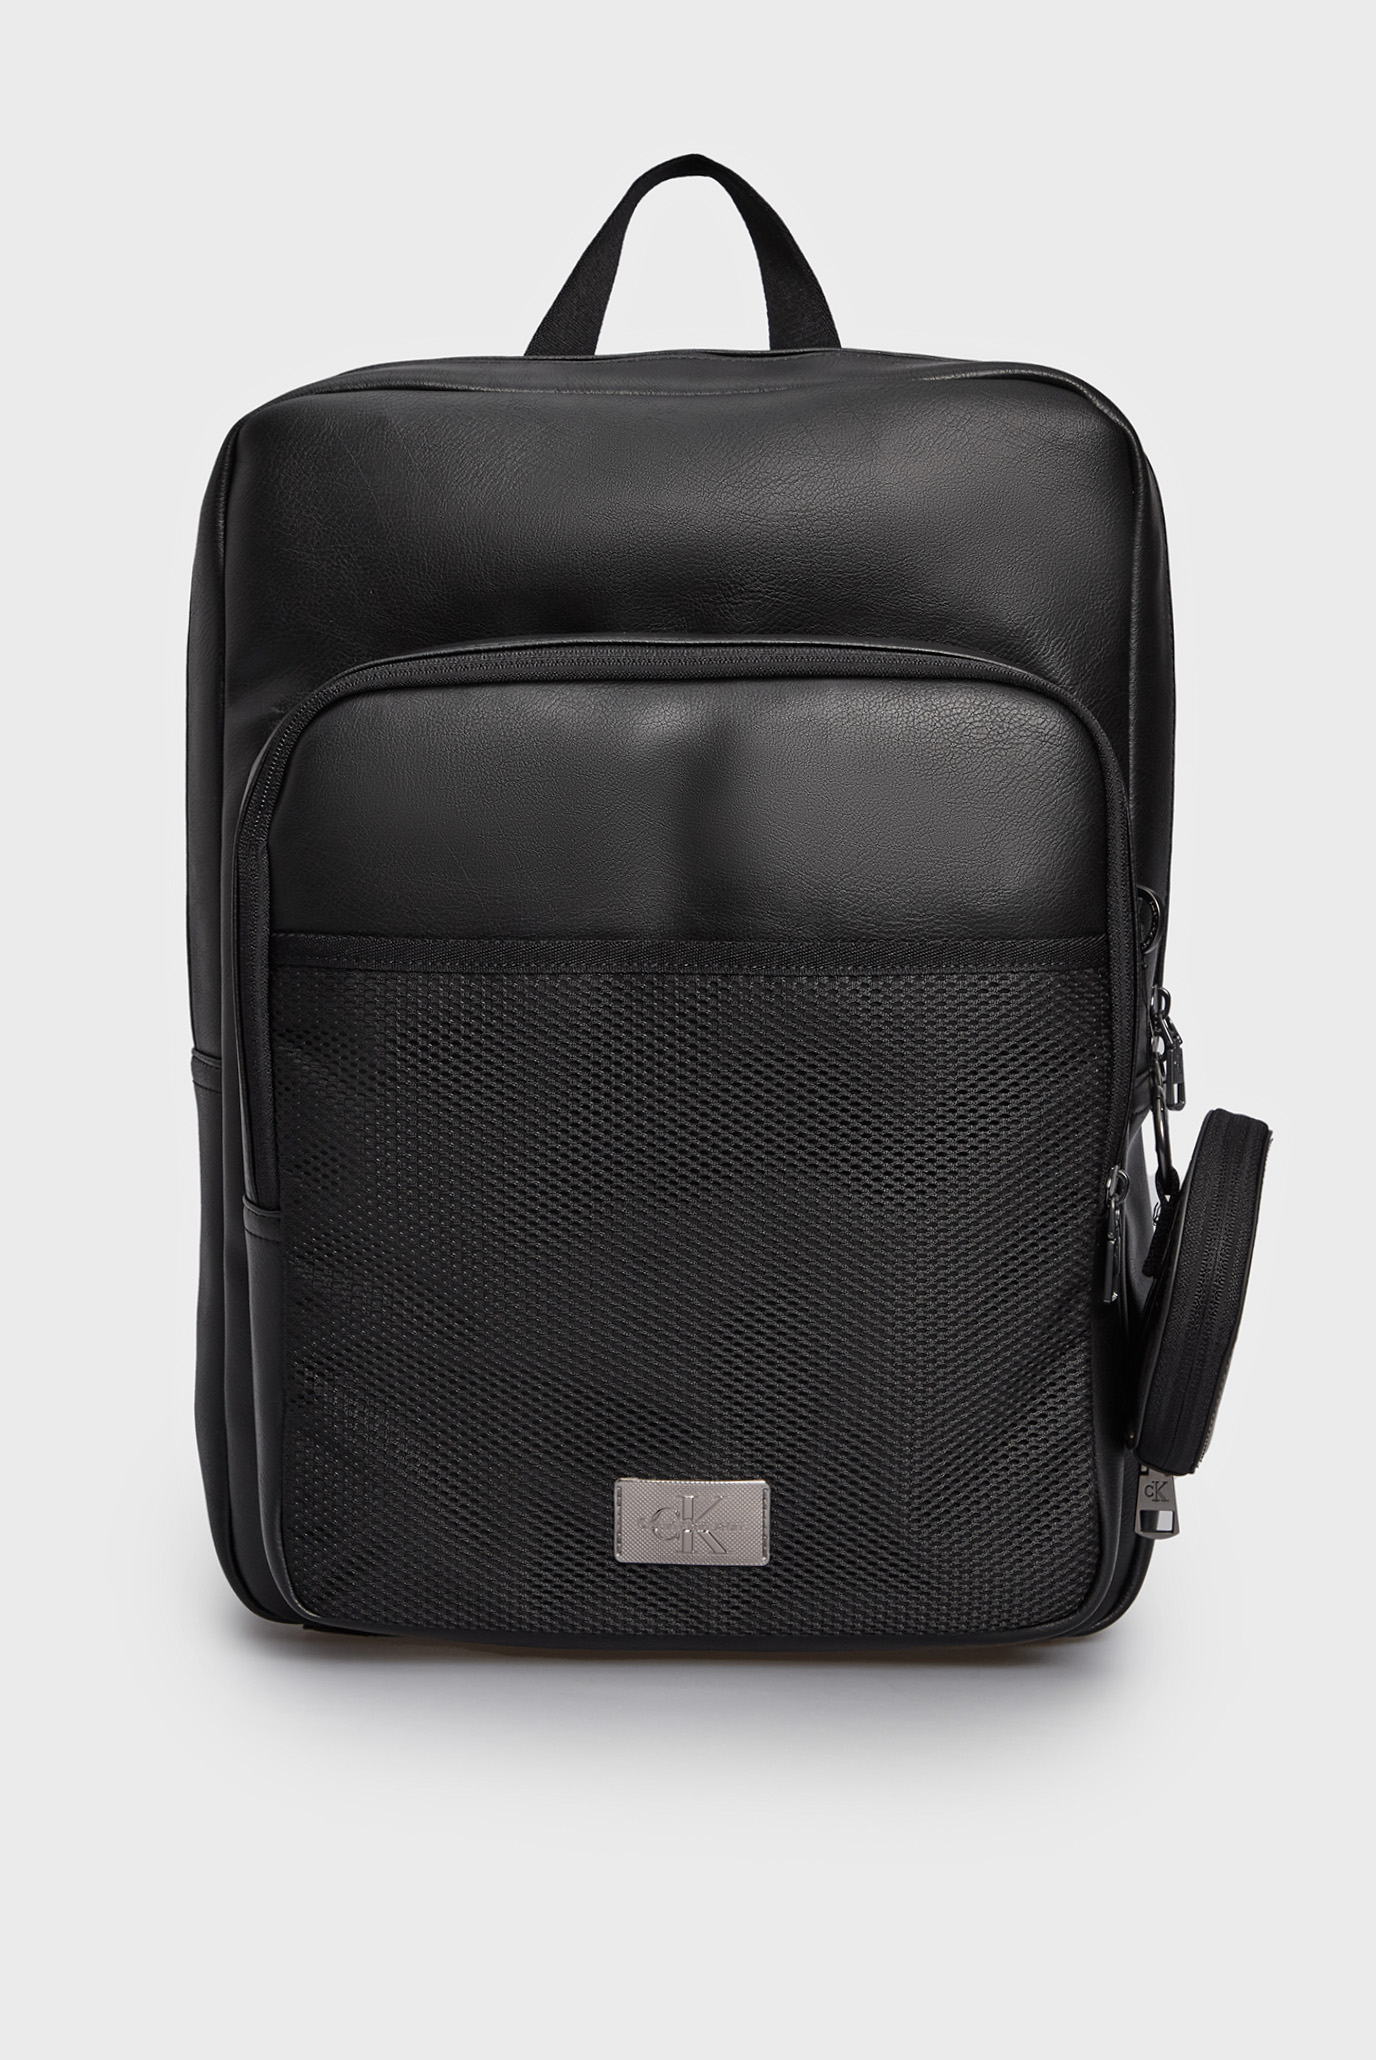 Чоловічий чорний рюкзак AGGED SLIM SQUARE BP43 1